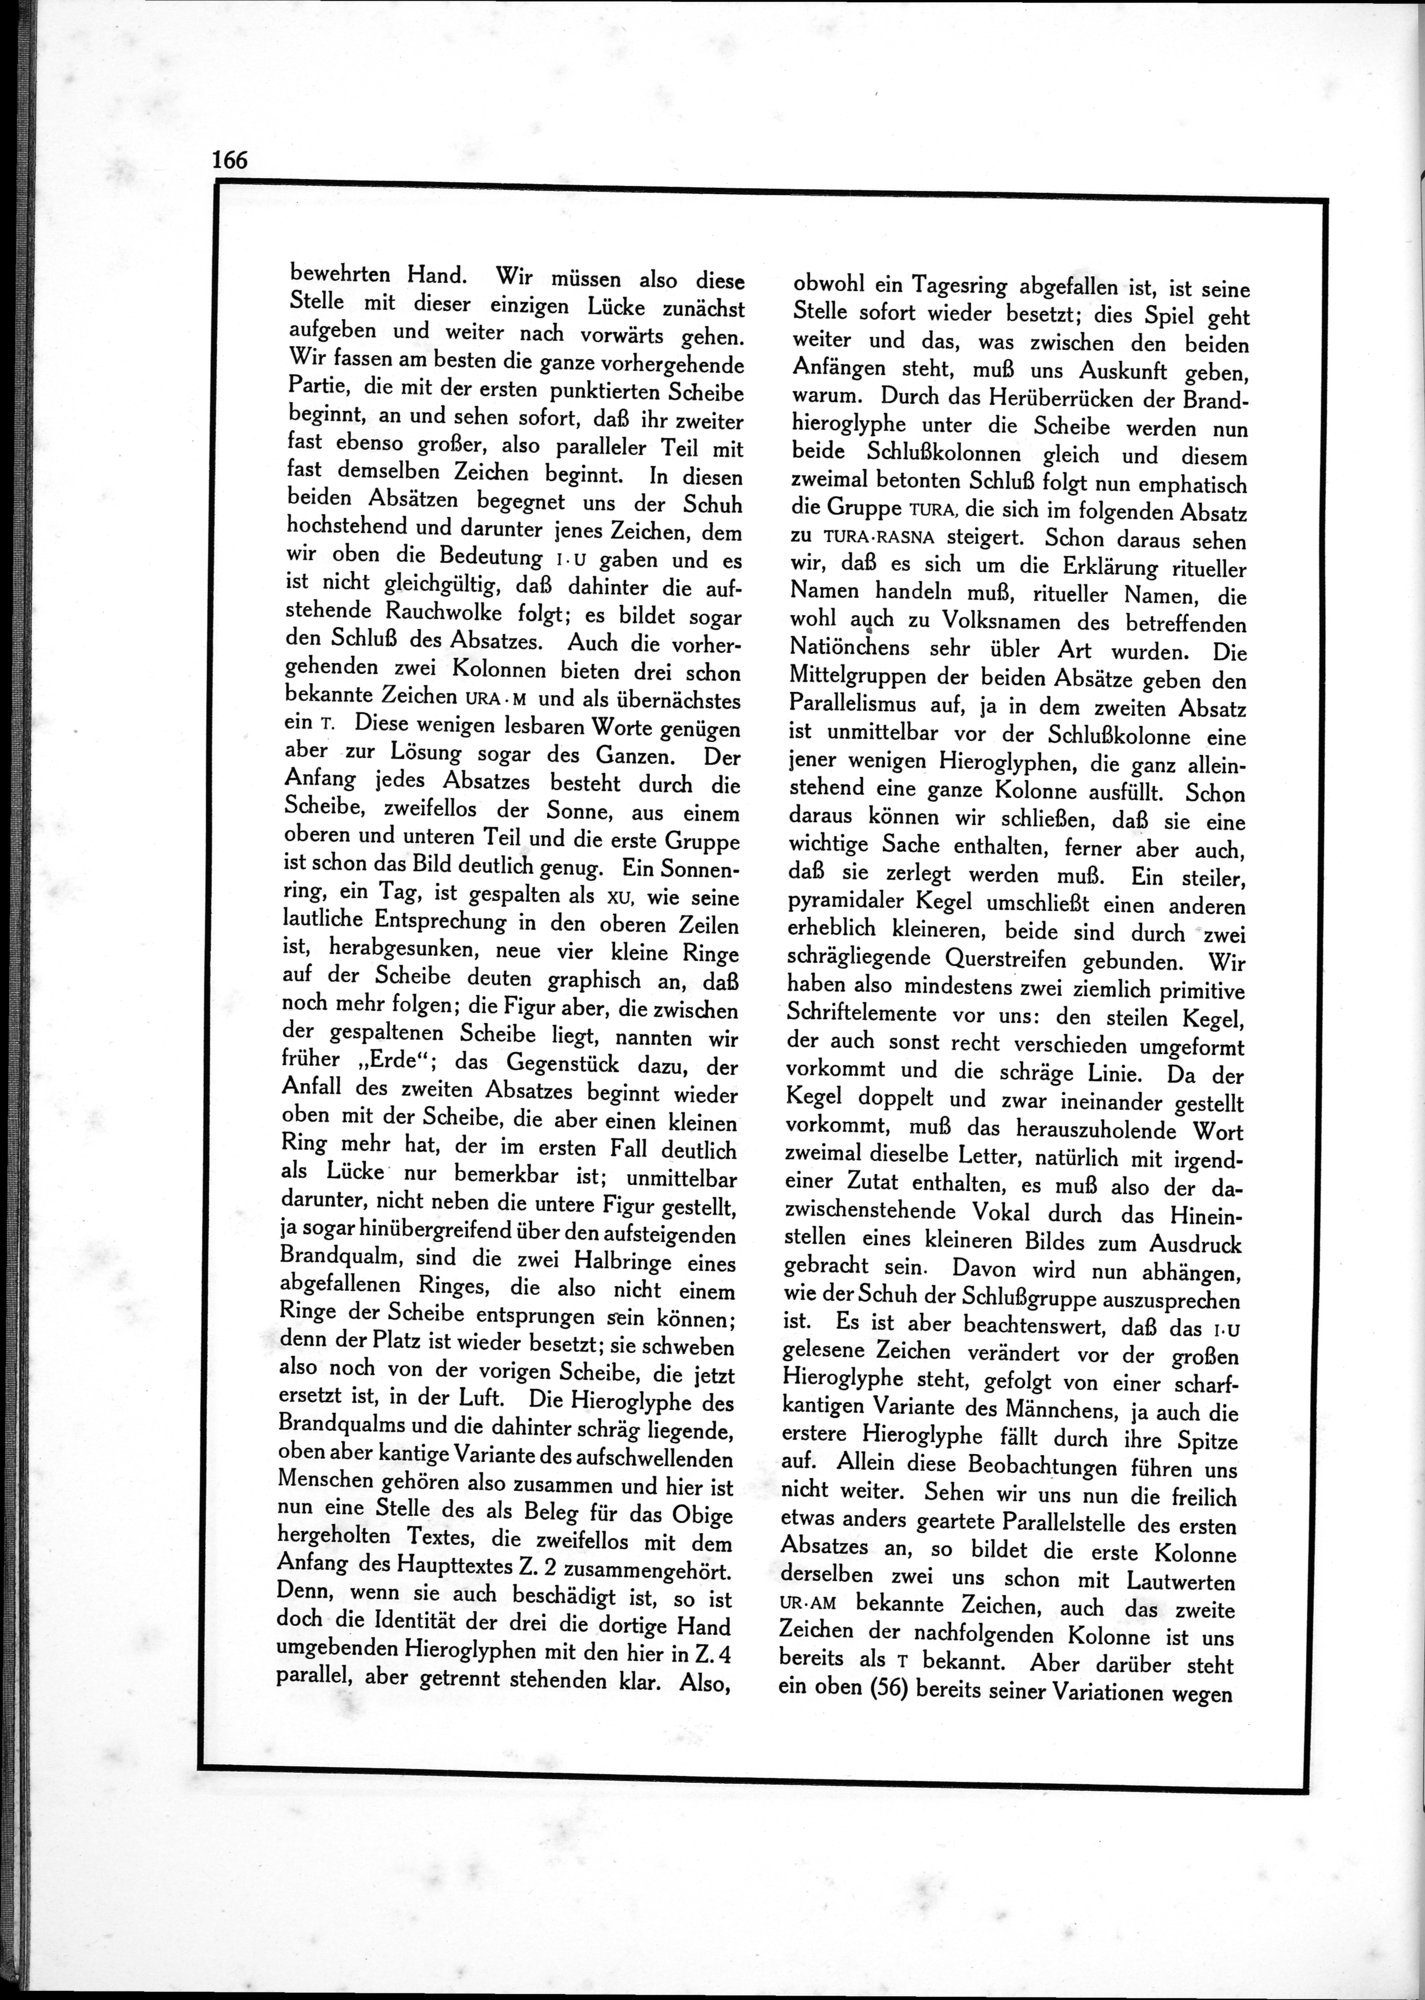 Die Teufel des Avesta und Ihre Beziehungen zur Ikonographie des Buddhismus Zentral-Asiens : vol.1 / Page 170 (Grayscale High Resolution Image)